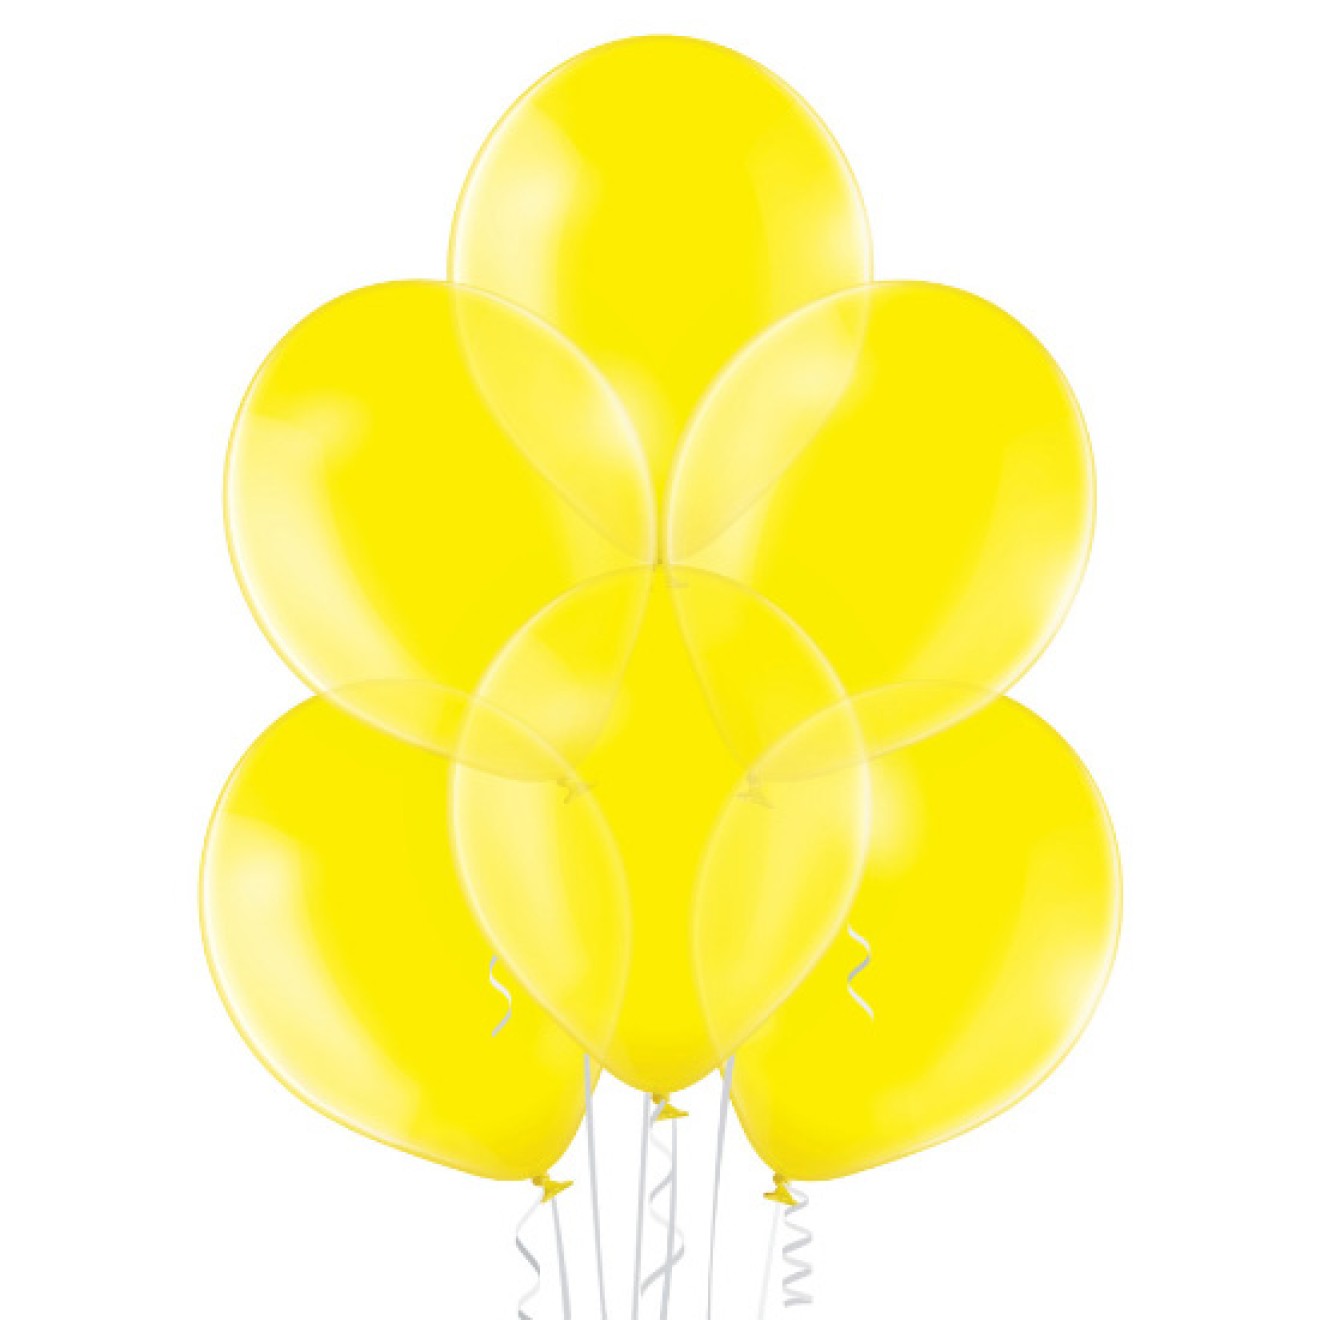 Luftballon-Kristall-Gelb